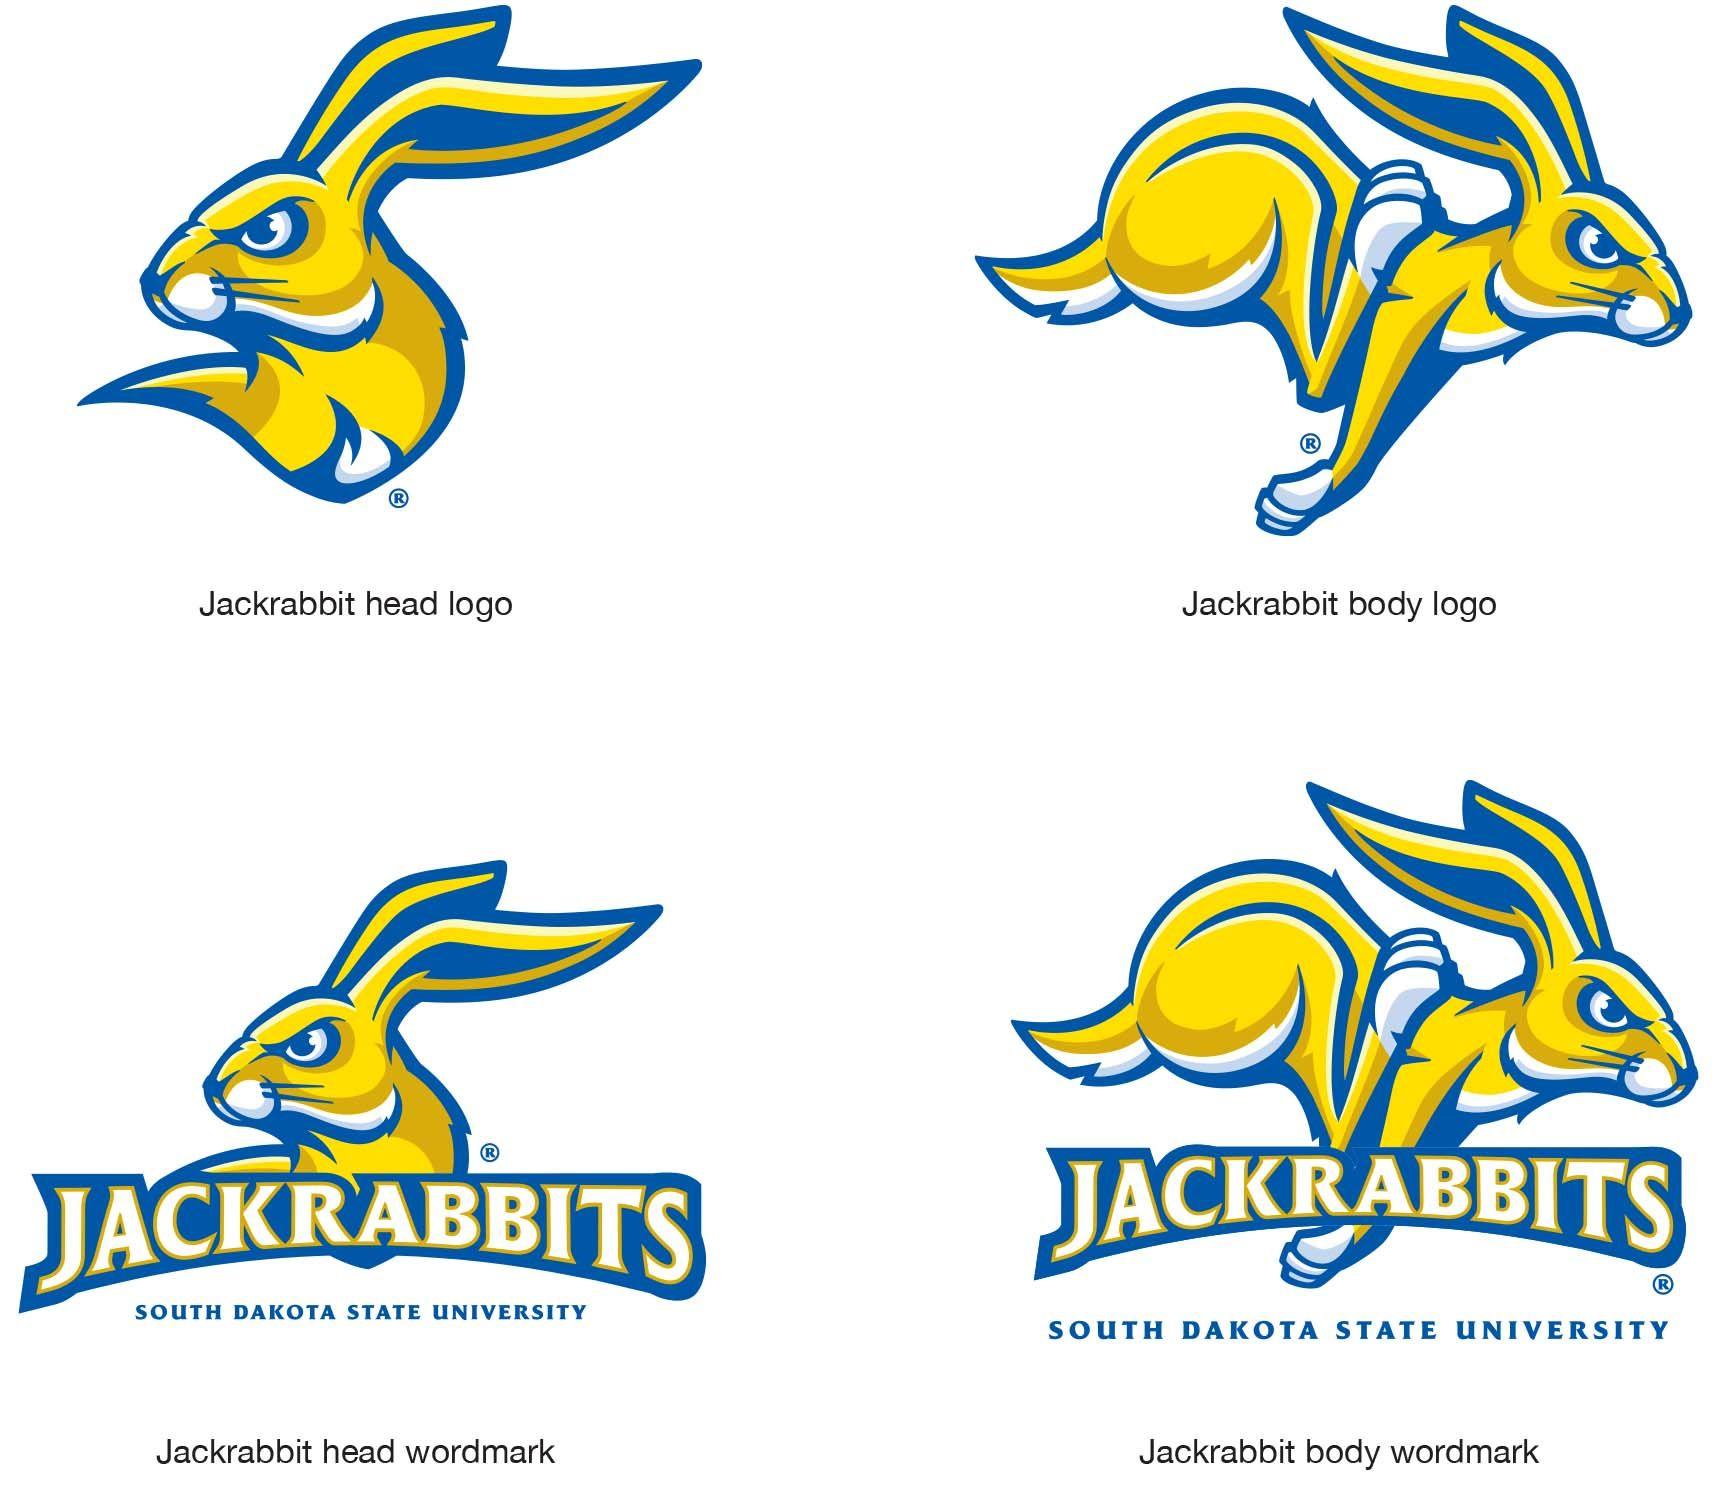 South Dakota State Logo - Jackrabbit Logo | South Dakota State University